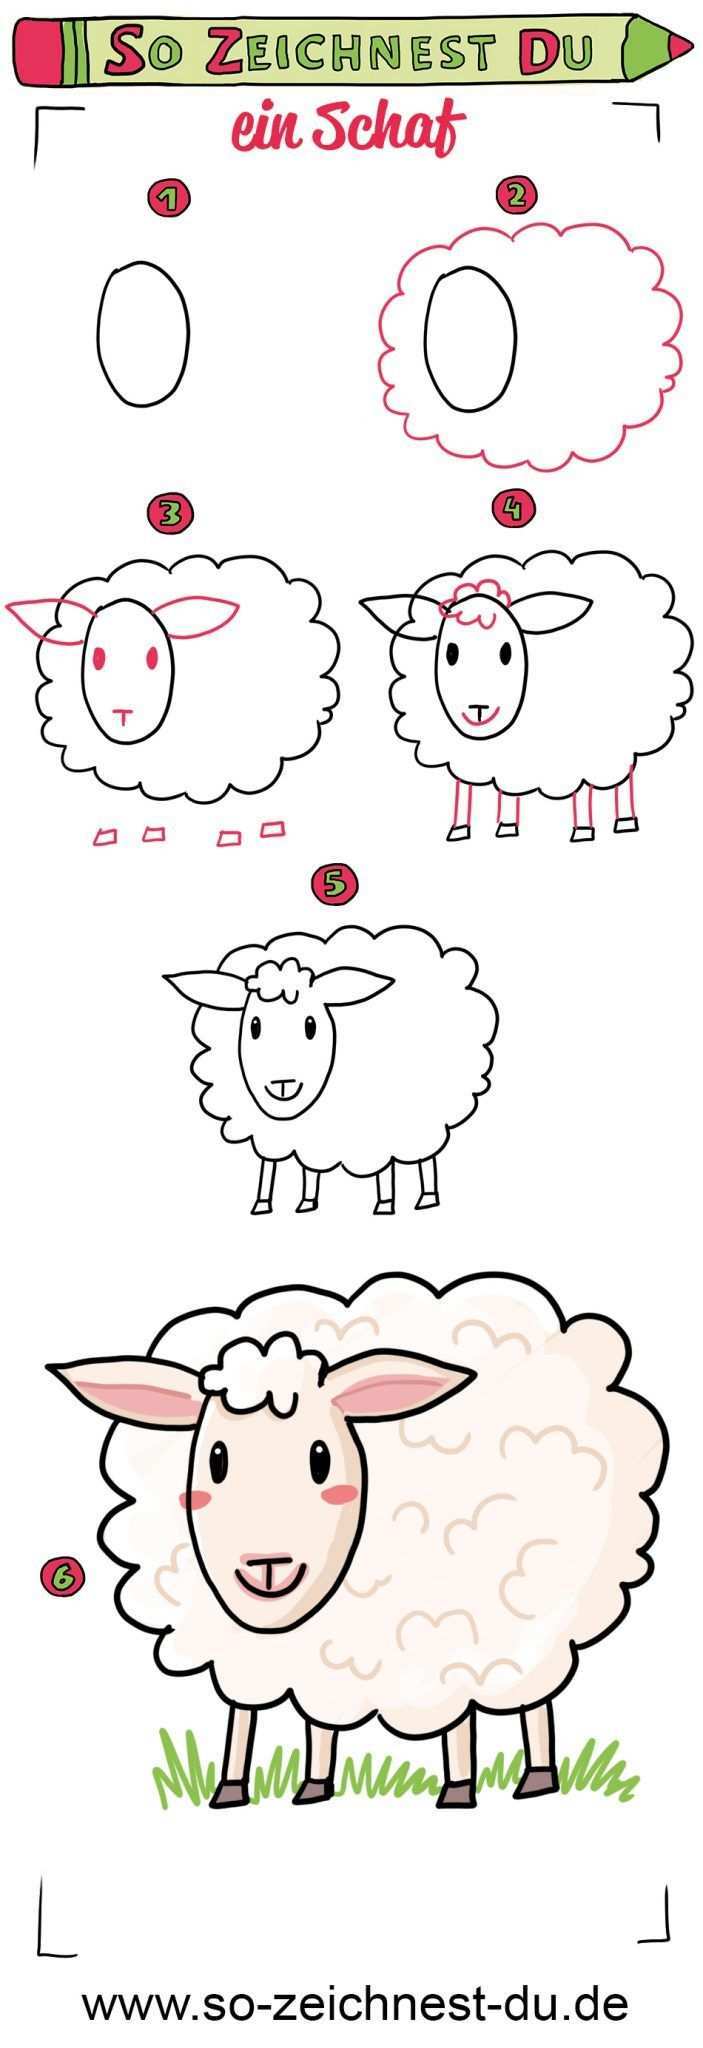 So Zeichnest Du Ein Schaf Einfach Zeichnen Lernen Fur Kinder Schaf Zeichnen Schildkrote Zeichnen